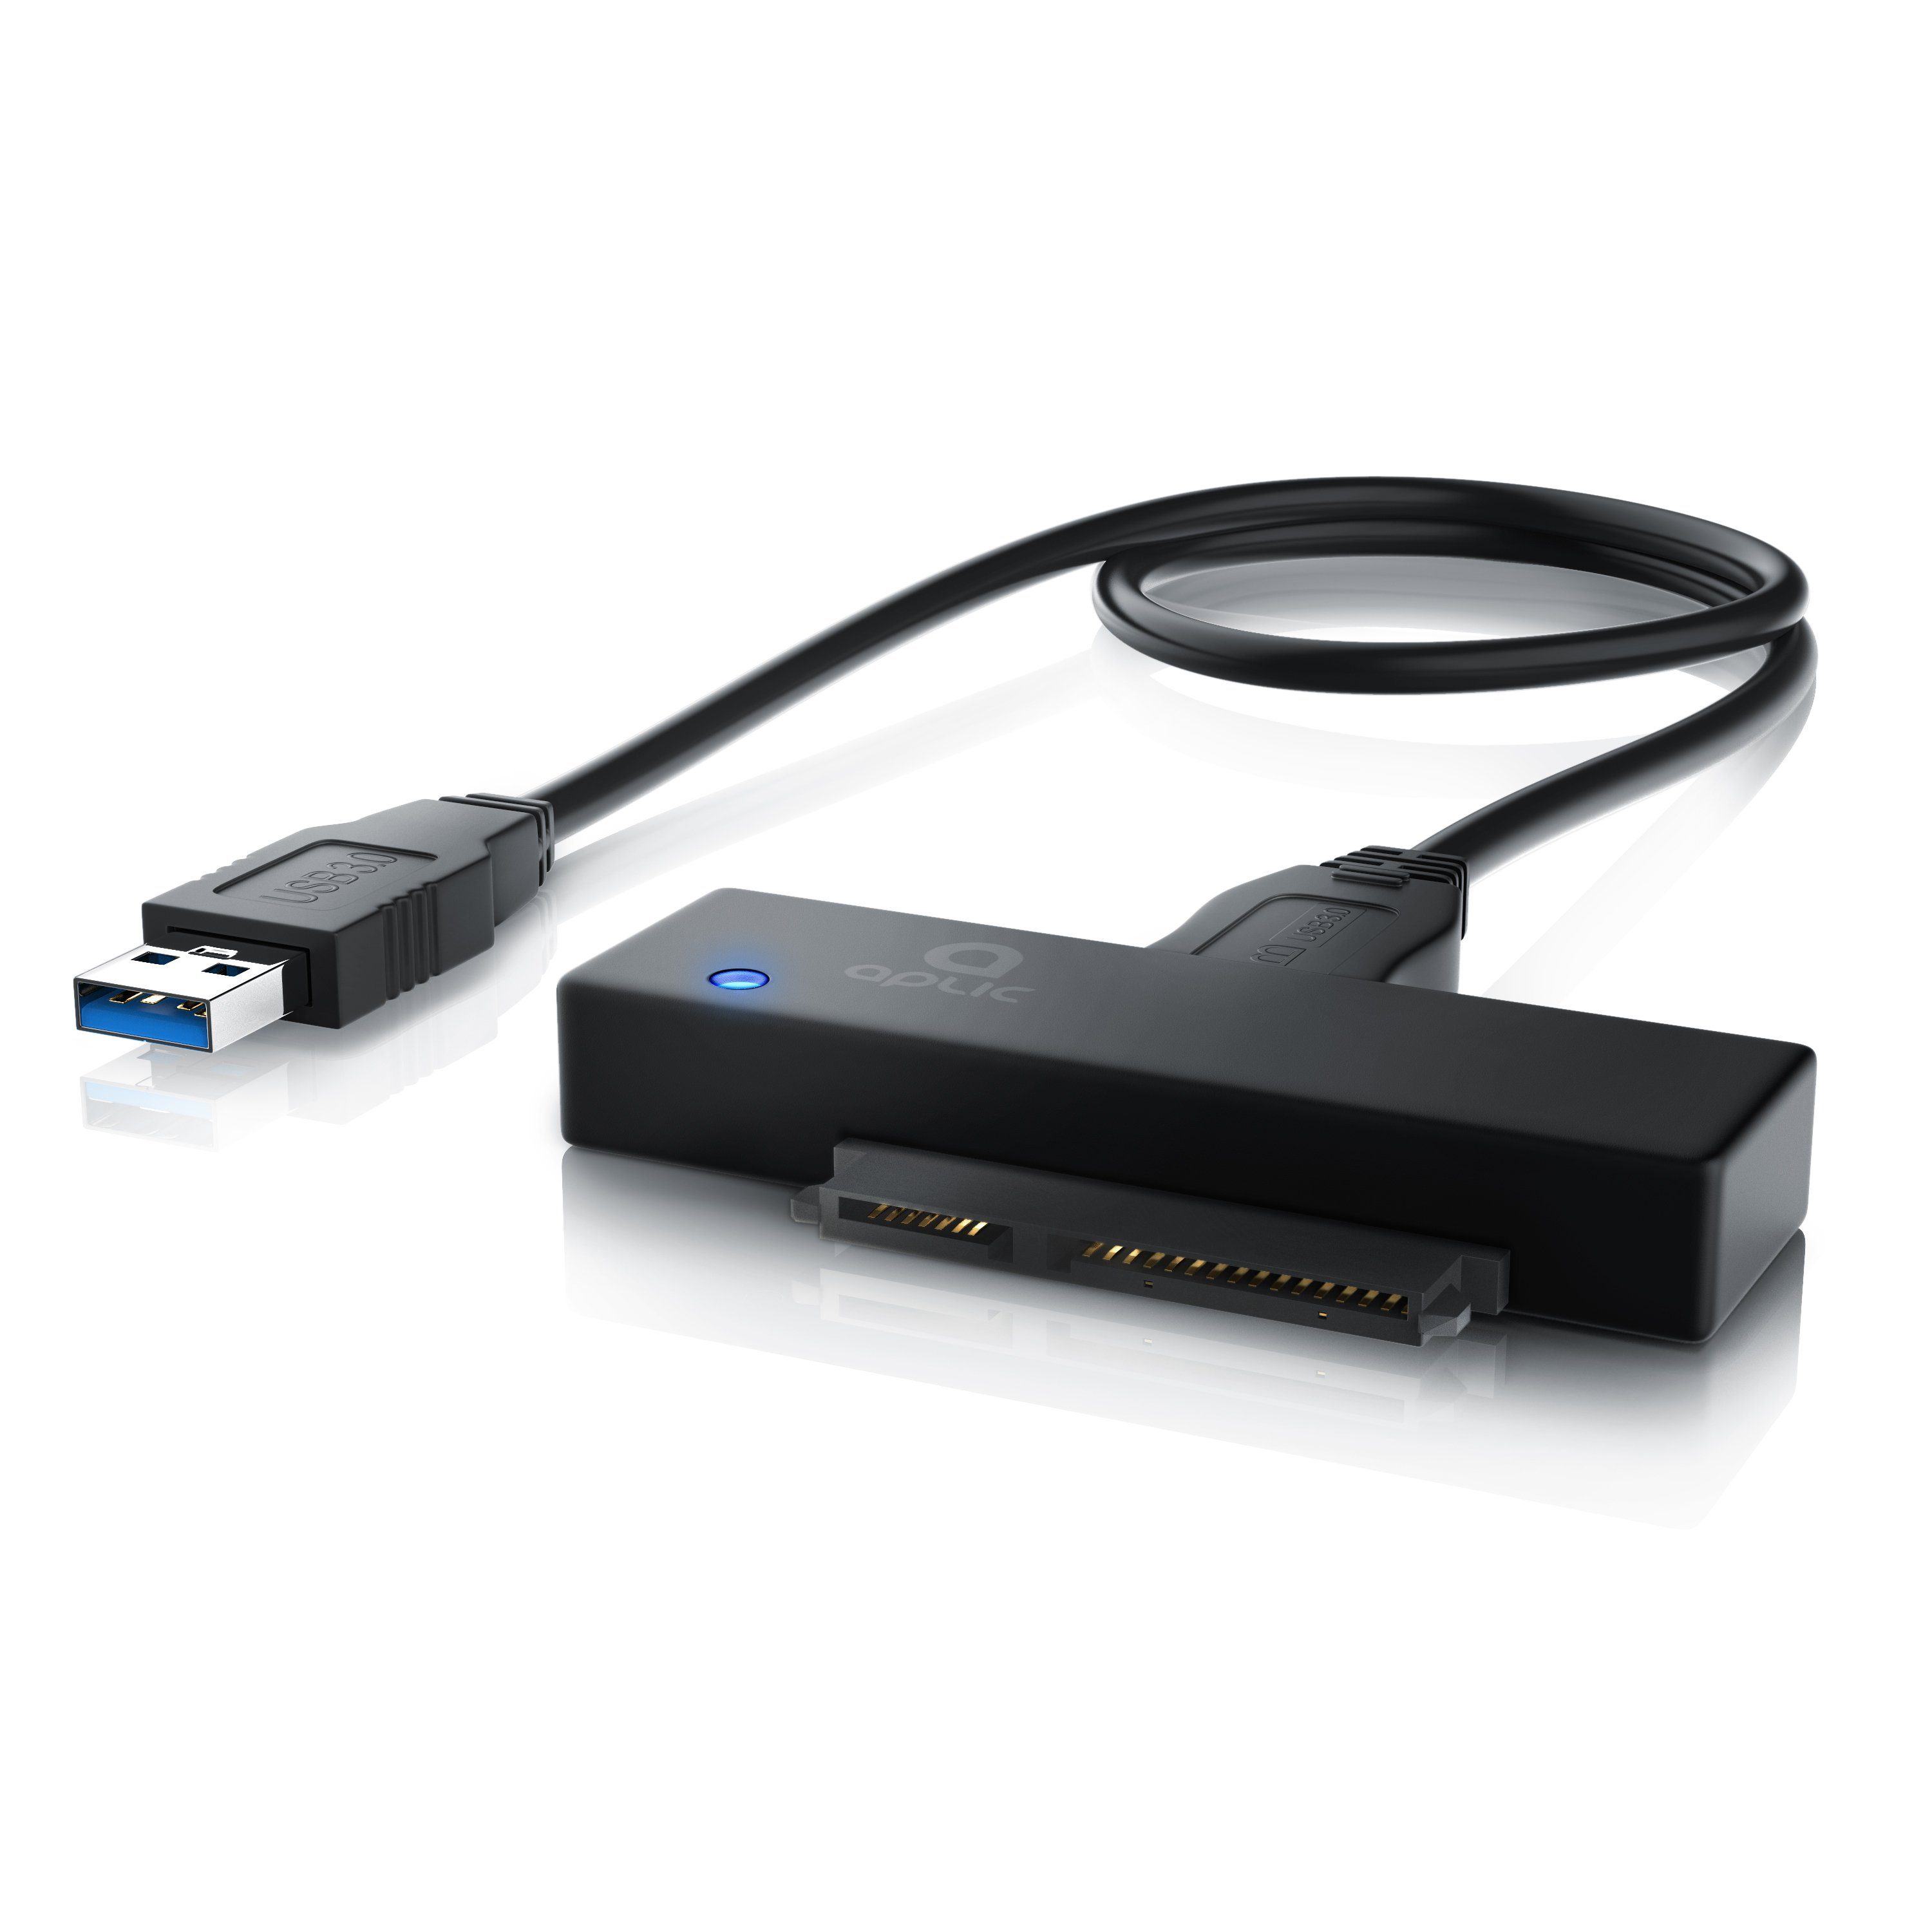 Aplic Computer-Adapter zu SATA 3.0 / 6GB, USB 3.0 Typ A, USB 3.0 zu SATA  Konverter Kabel inkl. Netzteil - SATA 1/2/3 Festplatten & Laufwerke - UASP  online kaufen | OTTO